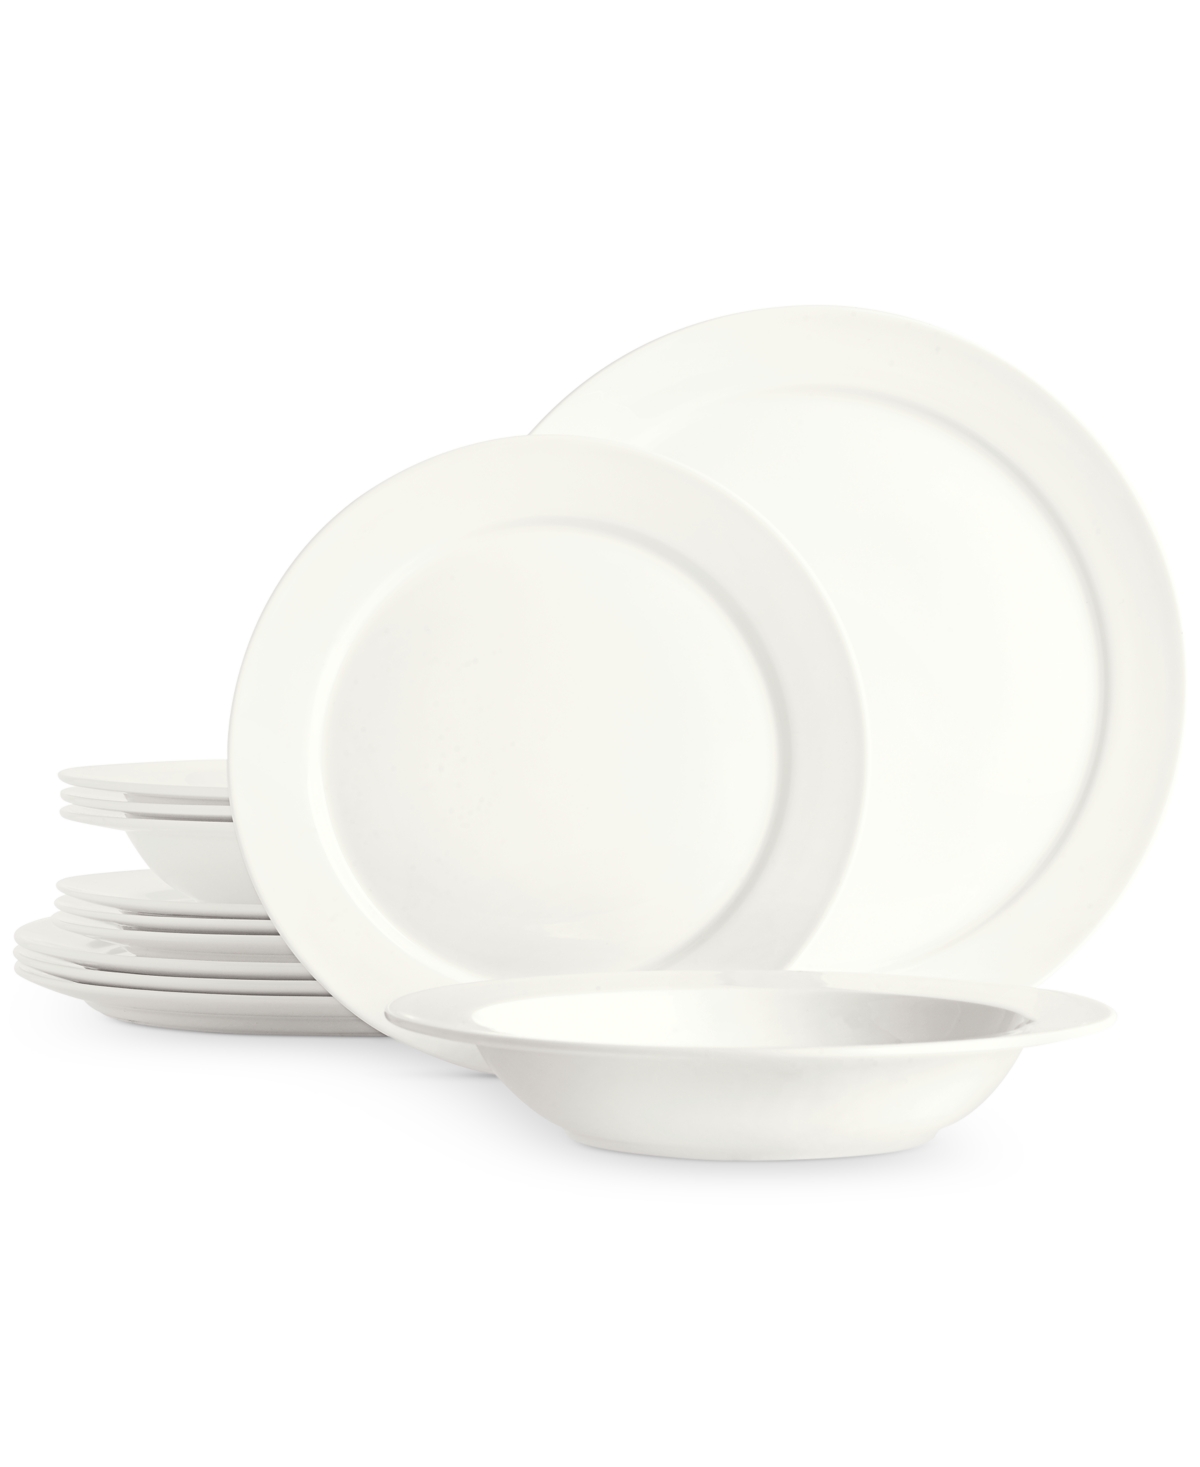 Round Rim Bone China 12 Pc. Dinnerware Set, Service for 4, Created for Macy's - White